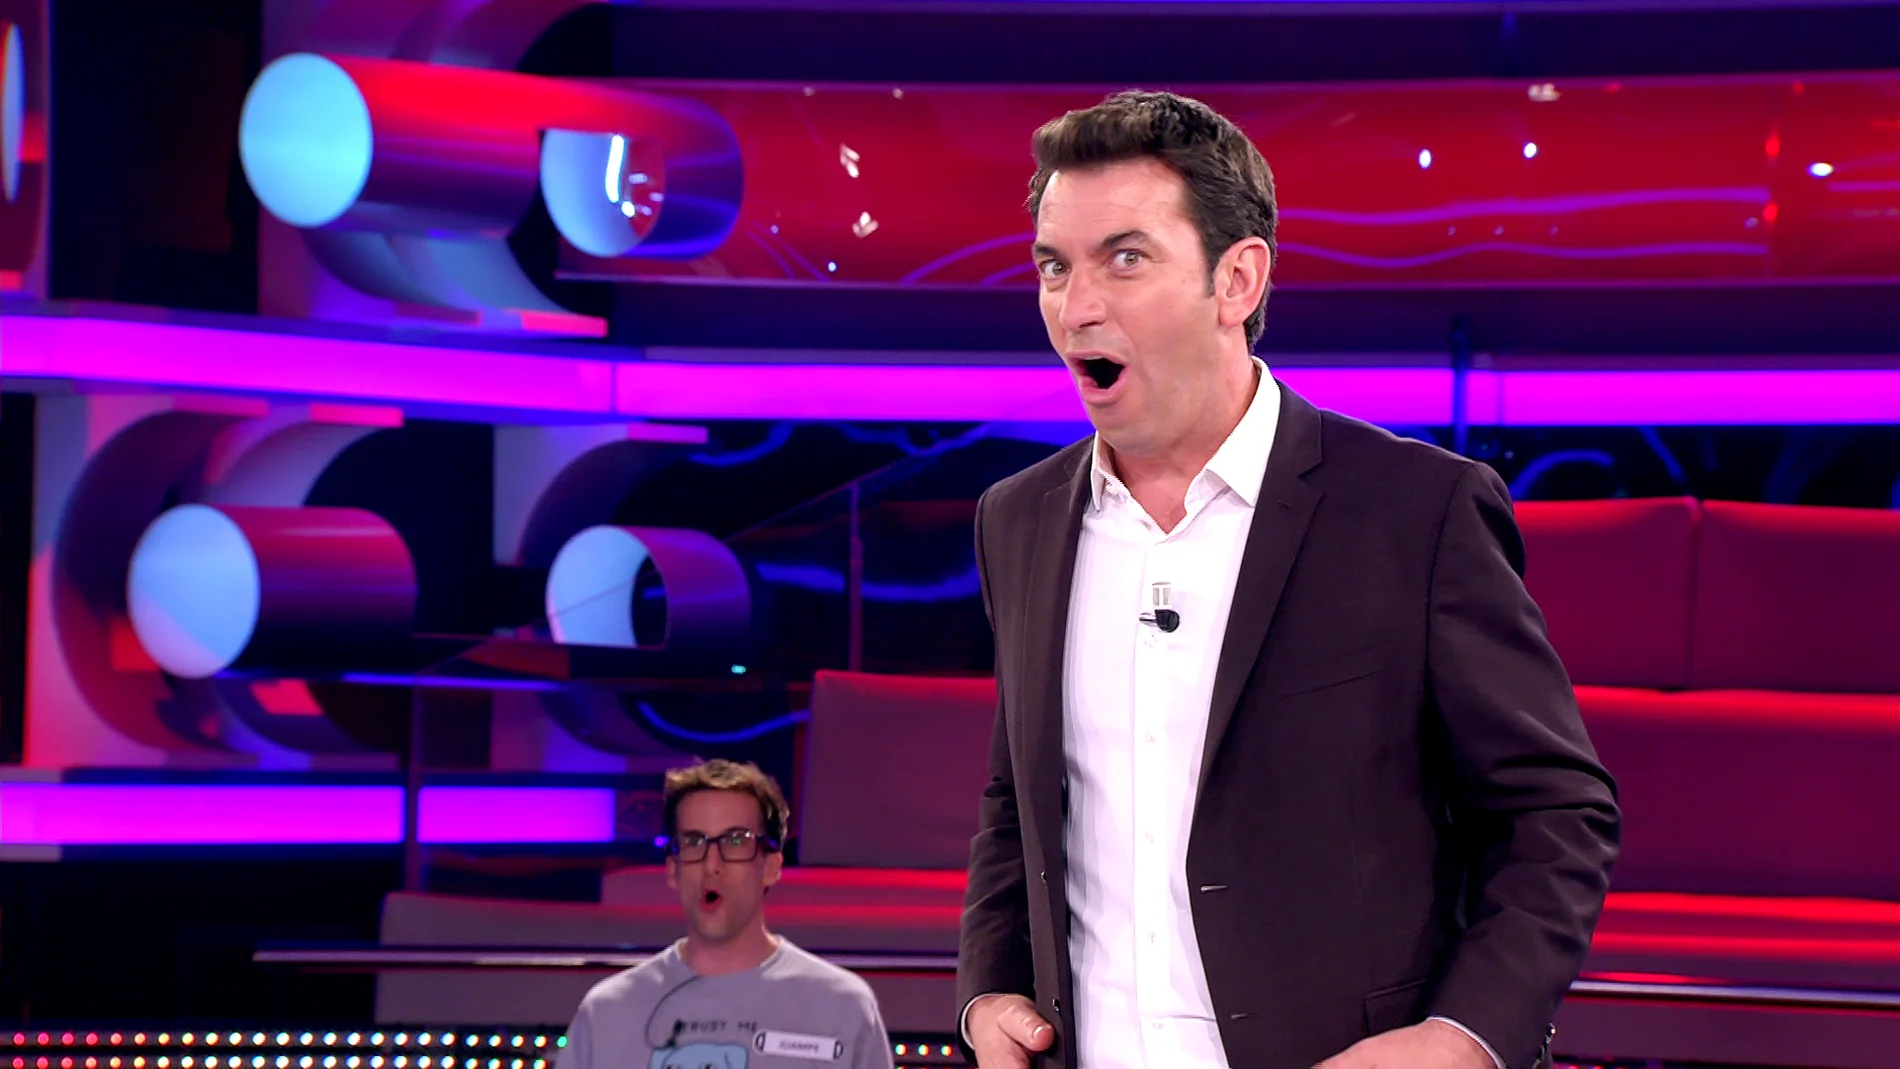 El tremendo zasca de una concursante a Arturo Valls tras uno de sus chistes en ‘¡Ahora caigo!’